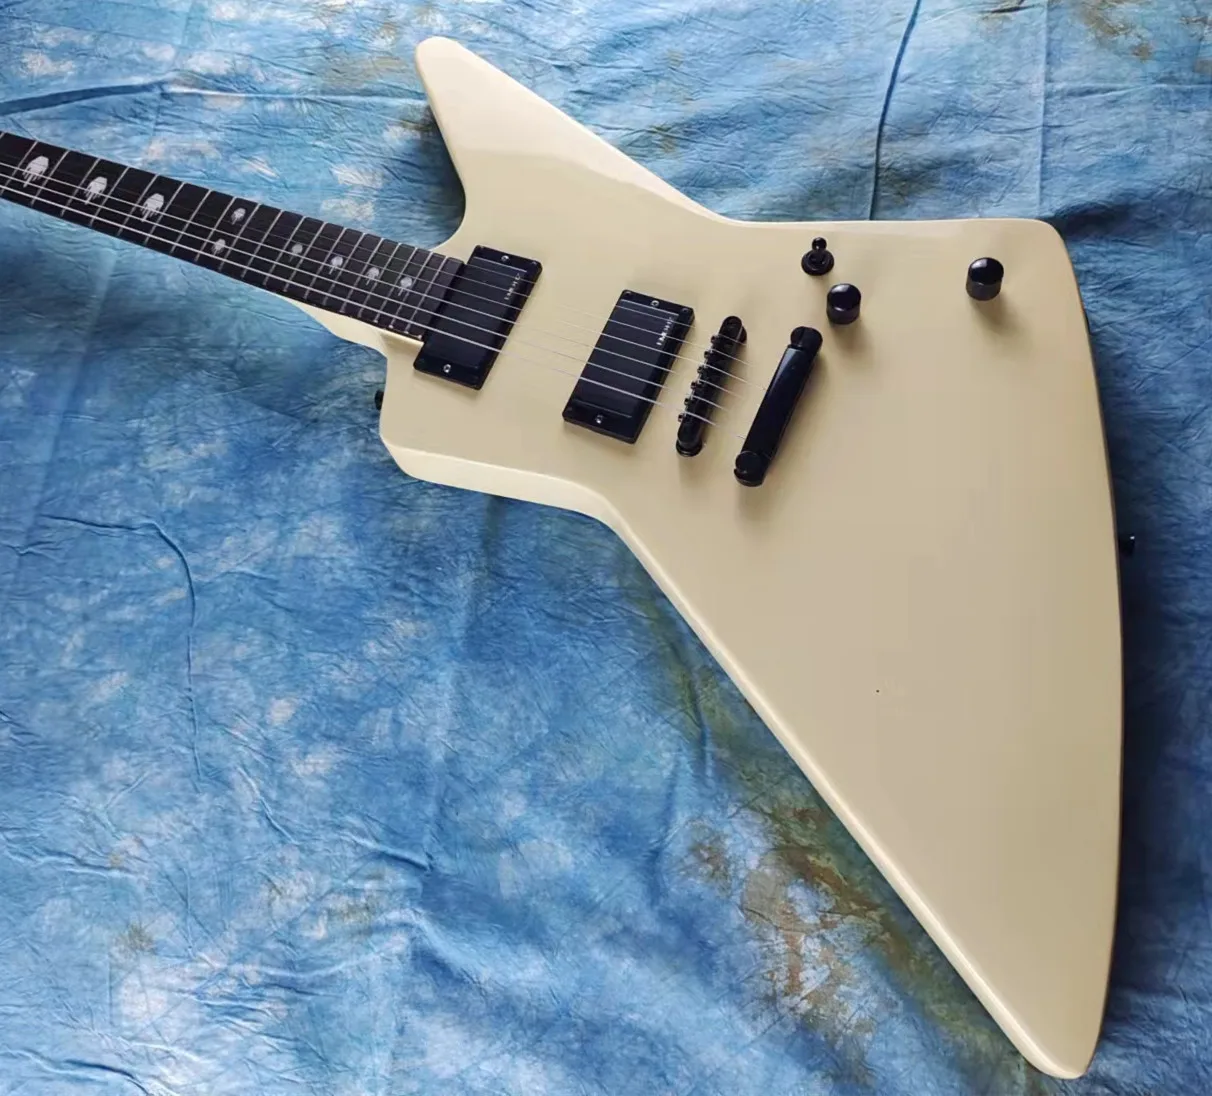 

Редкая тяжелая металлическая гитара James Hetfield MX-220 крем для подписи White Explorer электрическая гитара с отпечатком пальца среднего пальца, копия E